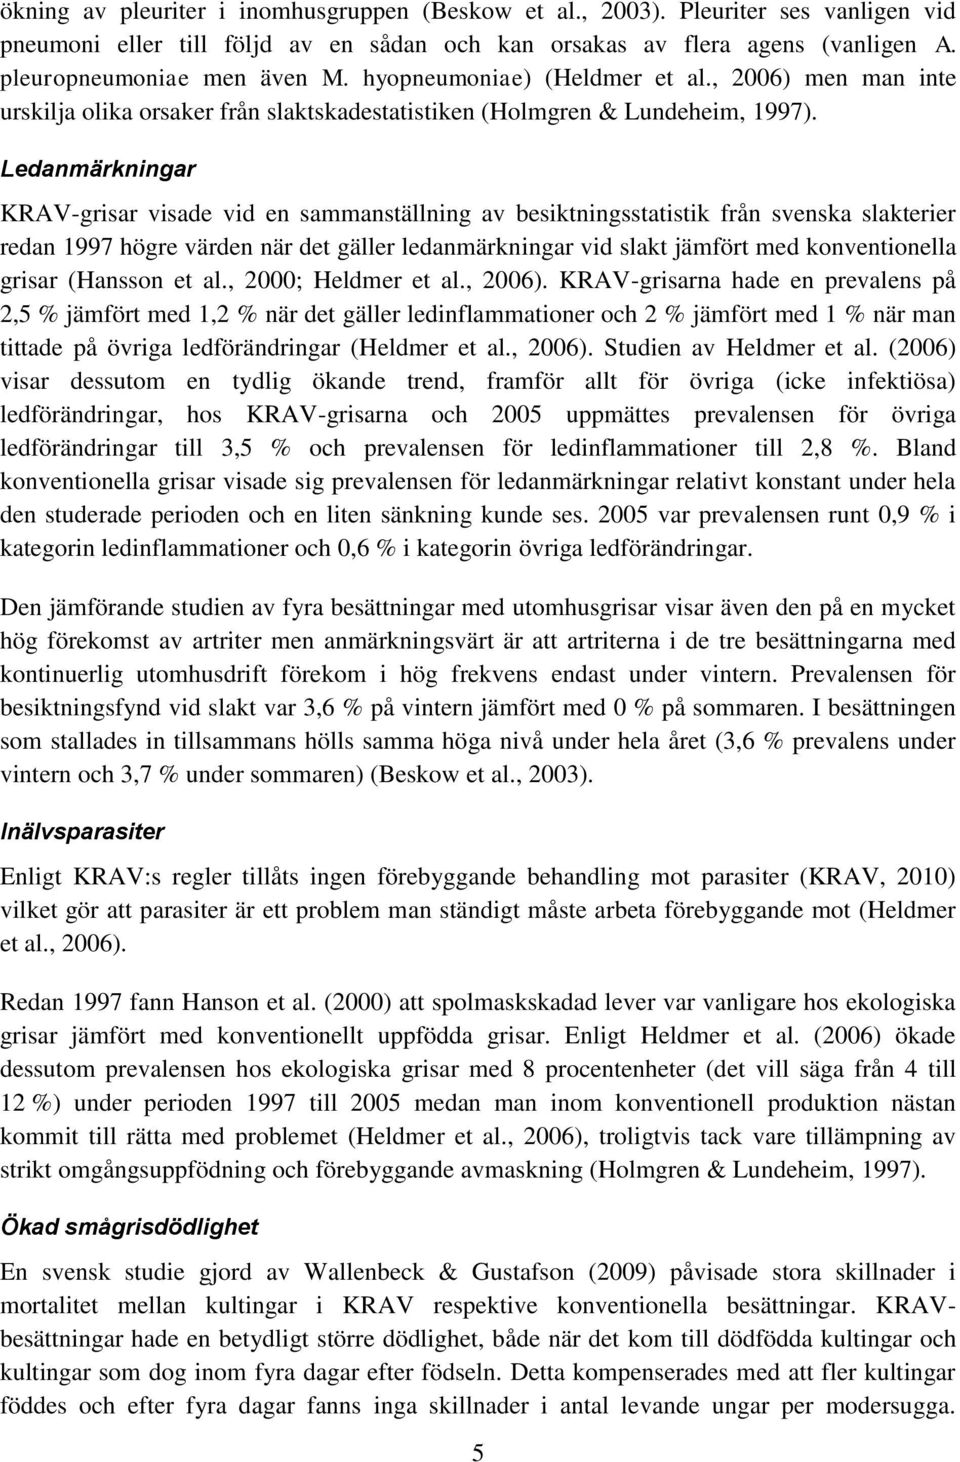 Ledanmärkningar KRAV-grisar visade vid en sammanställning av besiktningsstatistik från svenska slakterier redan 1997 högre värden när det gäller ledanmärkningar vid slakt jämfört med konventionella